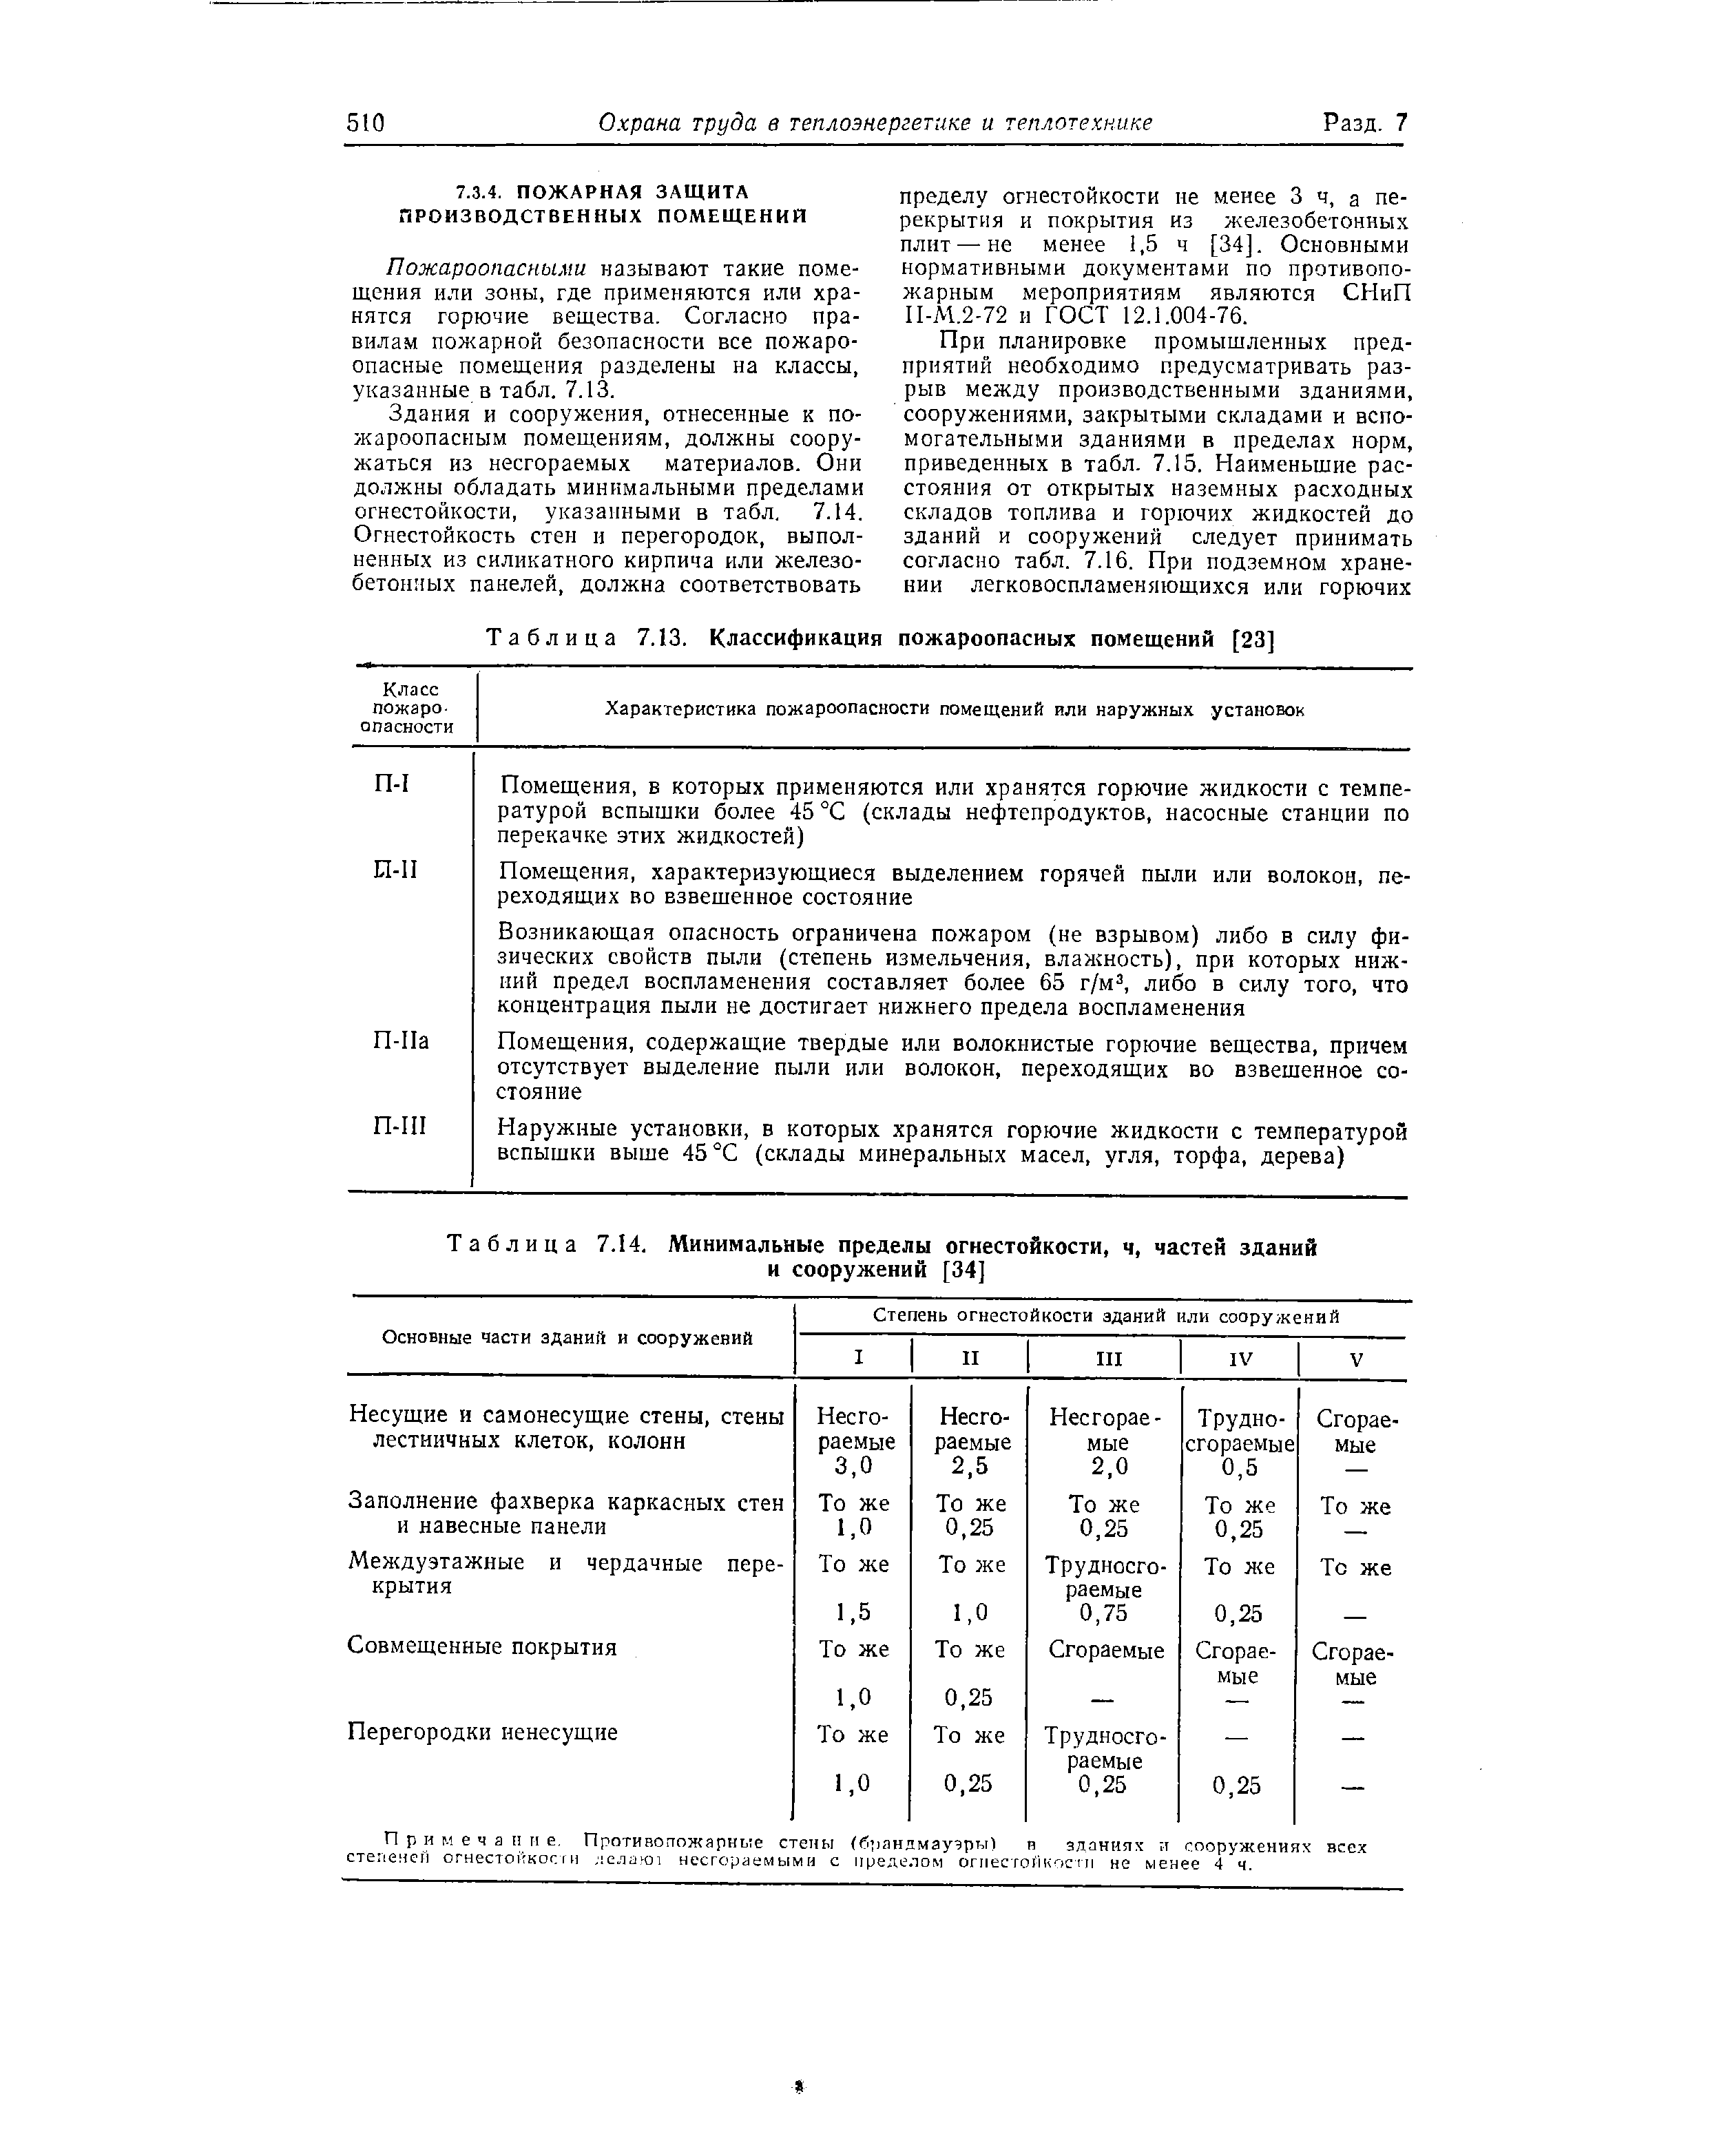 Таблица 7.13. Классификация пожароопасных помещений [23]
